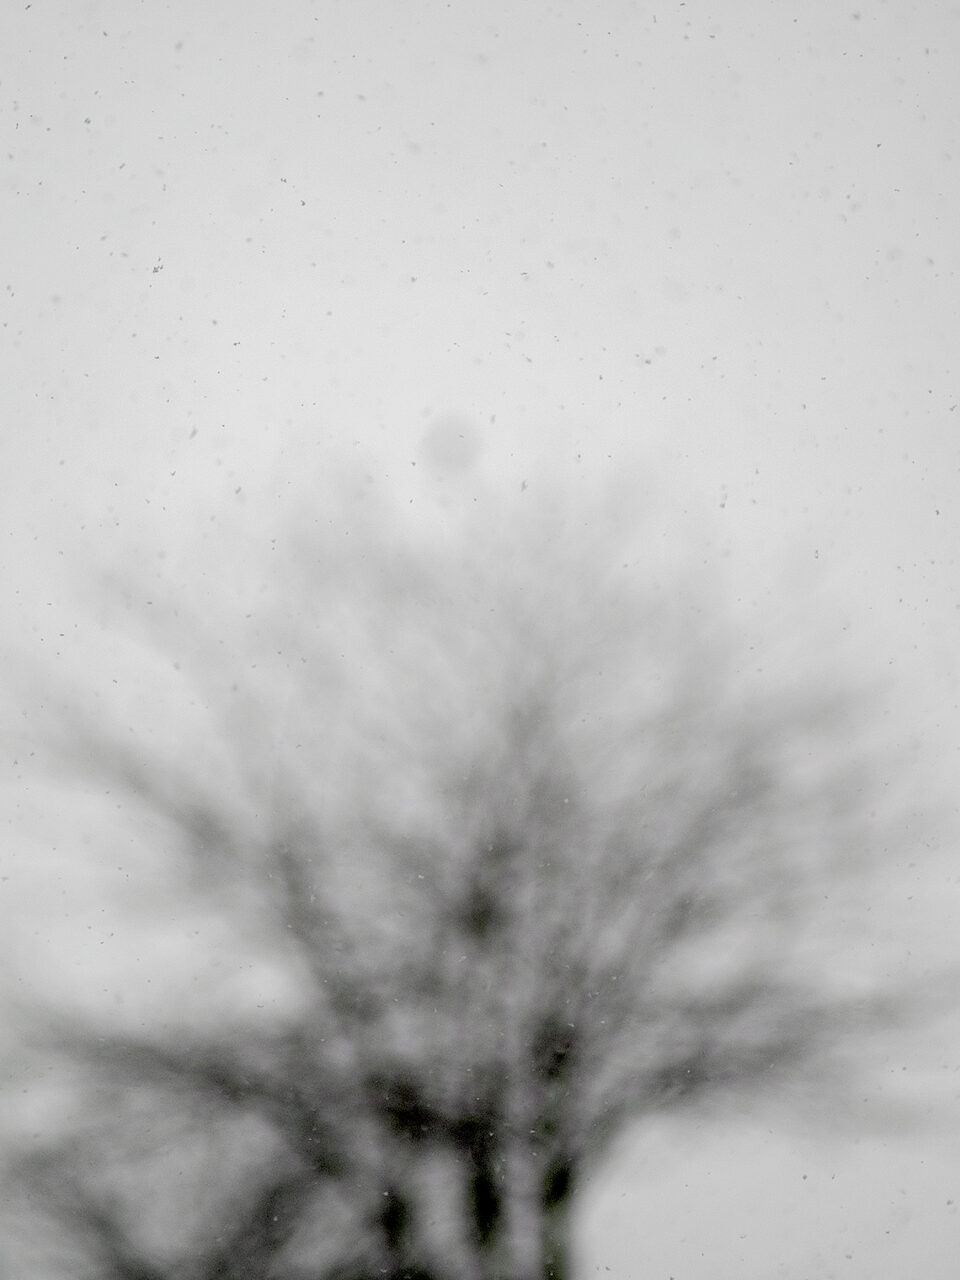 Karsten Rohrbeck: Schnee, Januar 2015, unscharf, Geäst unscharf im Hintergrund